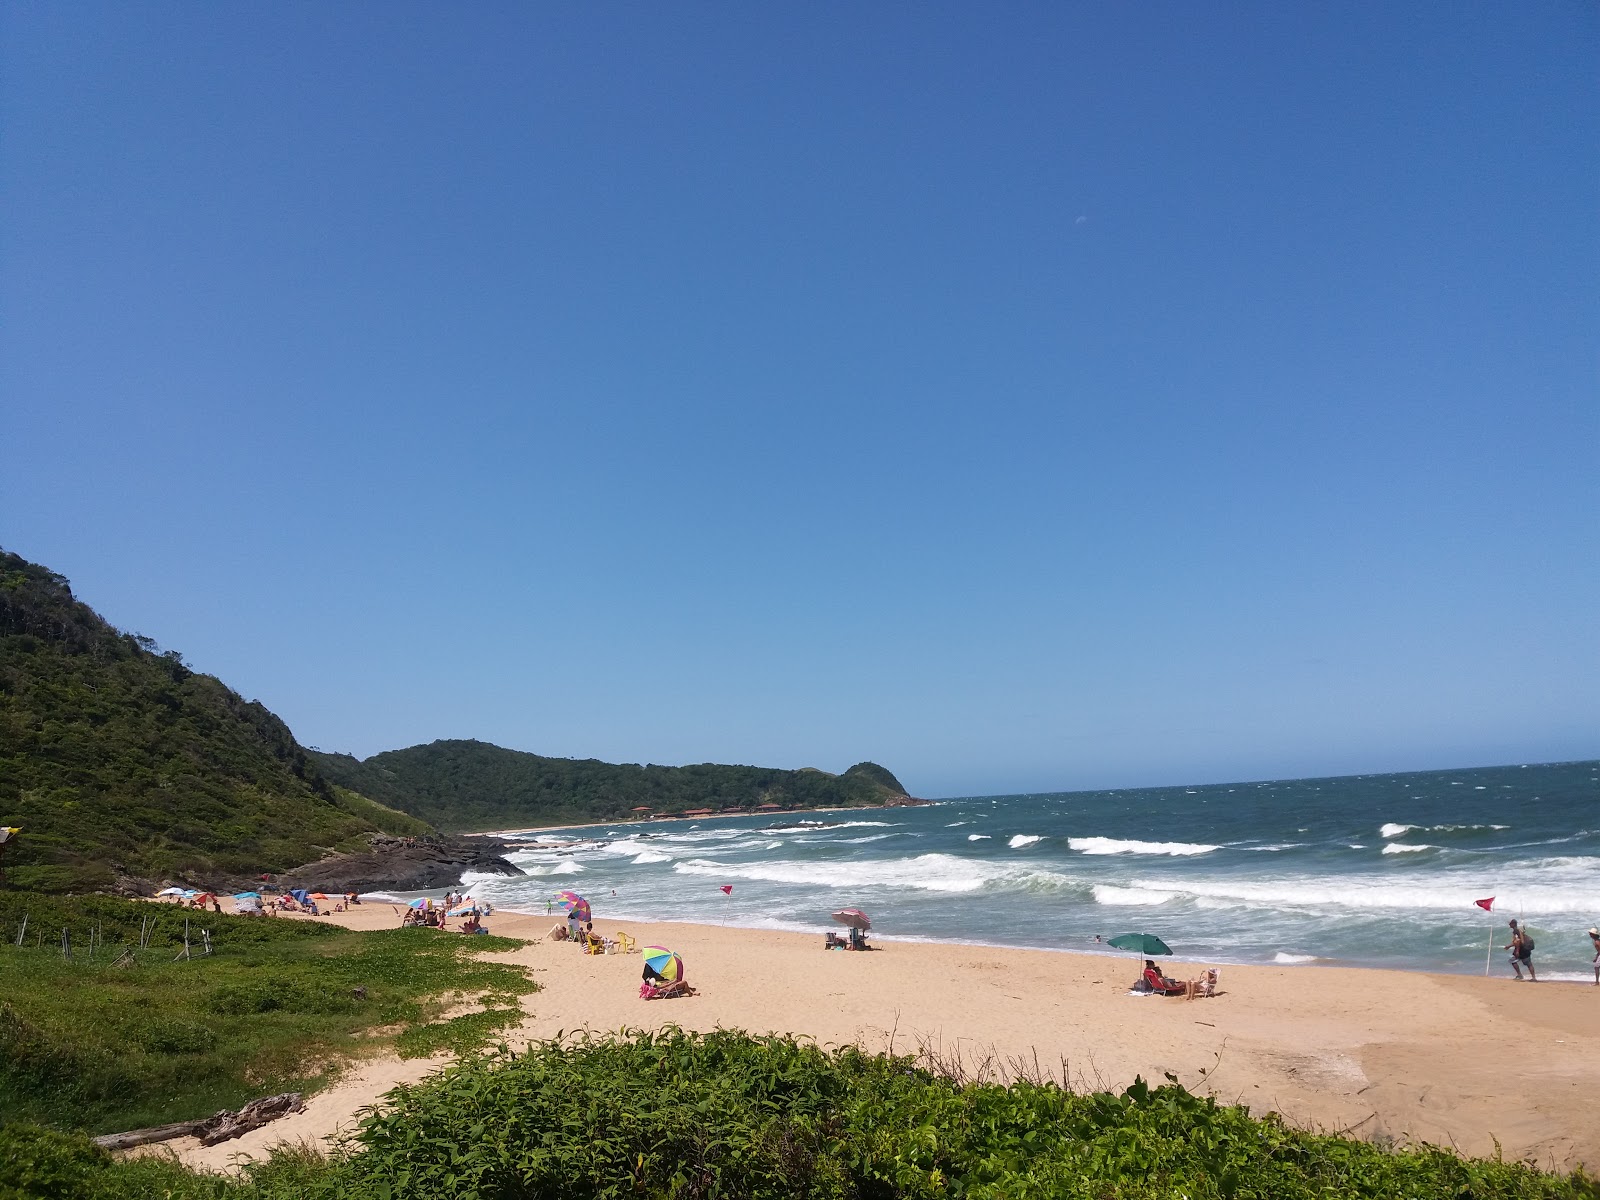 Fotografie cu Praia Vermelha - locul popular printre cunoscătorii de relaxare